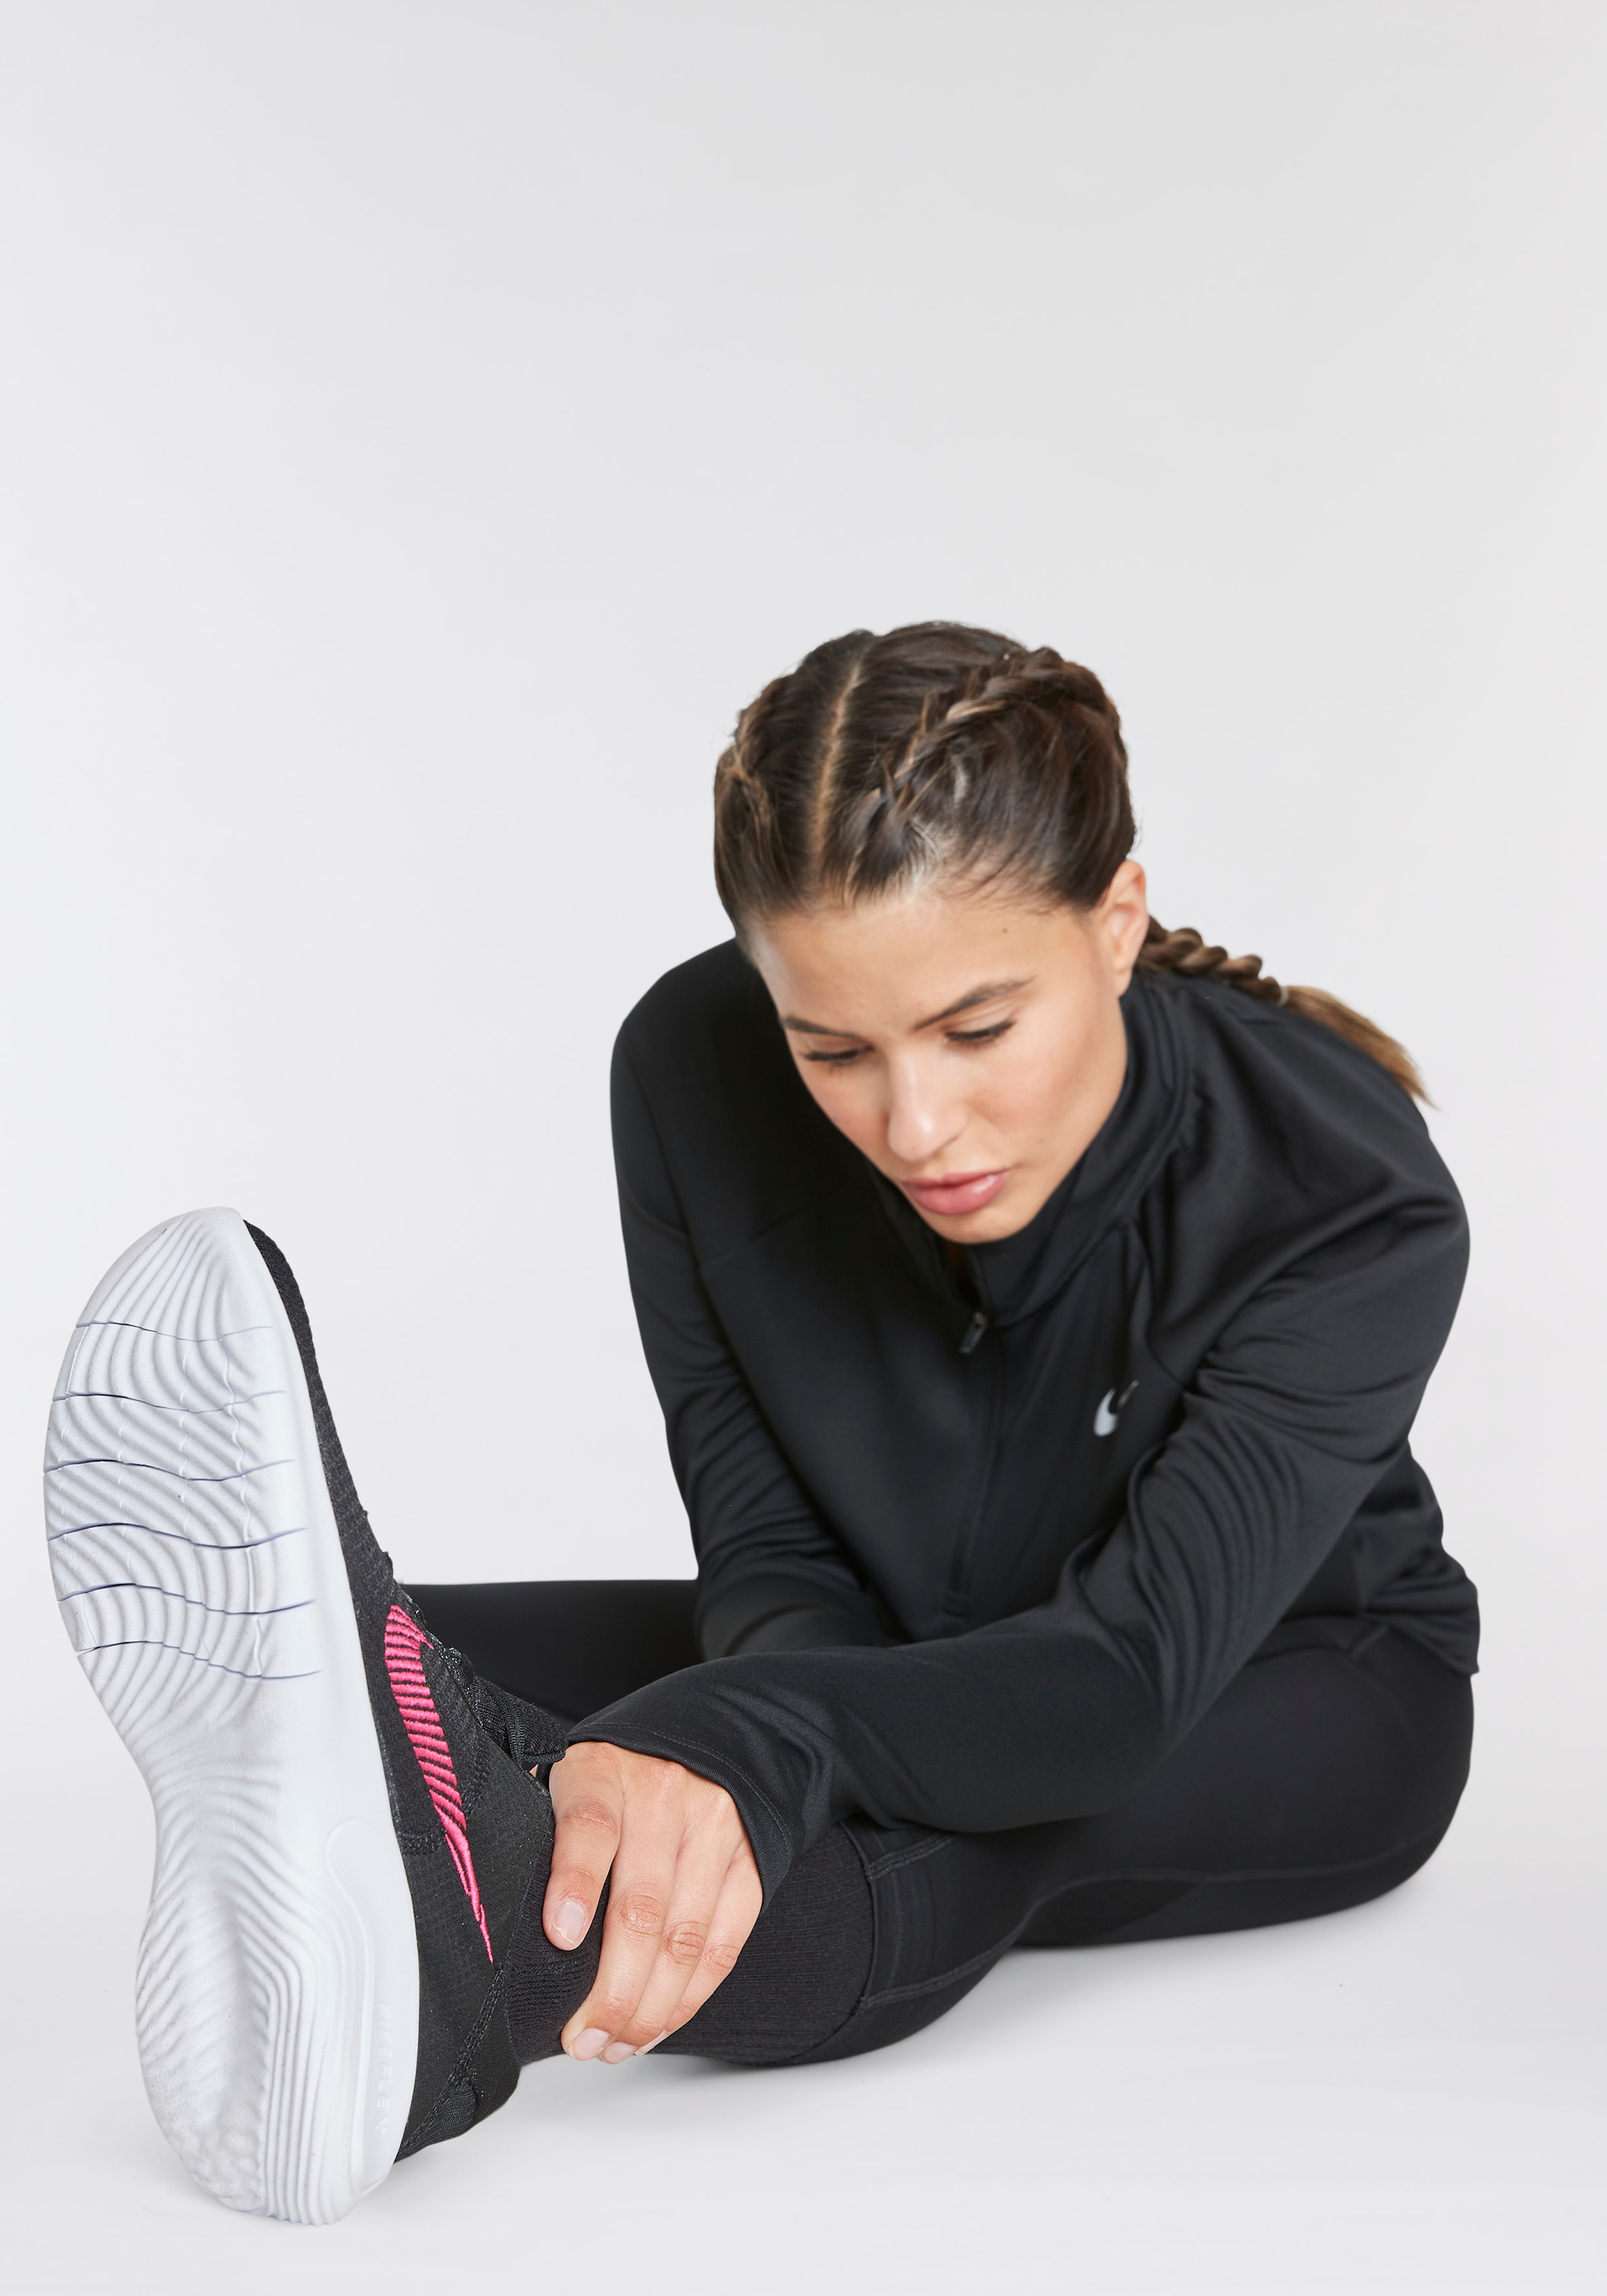 Nike Laufschuh »FLEX EXPERIENCE RUN 11 NEXT NATURE«